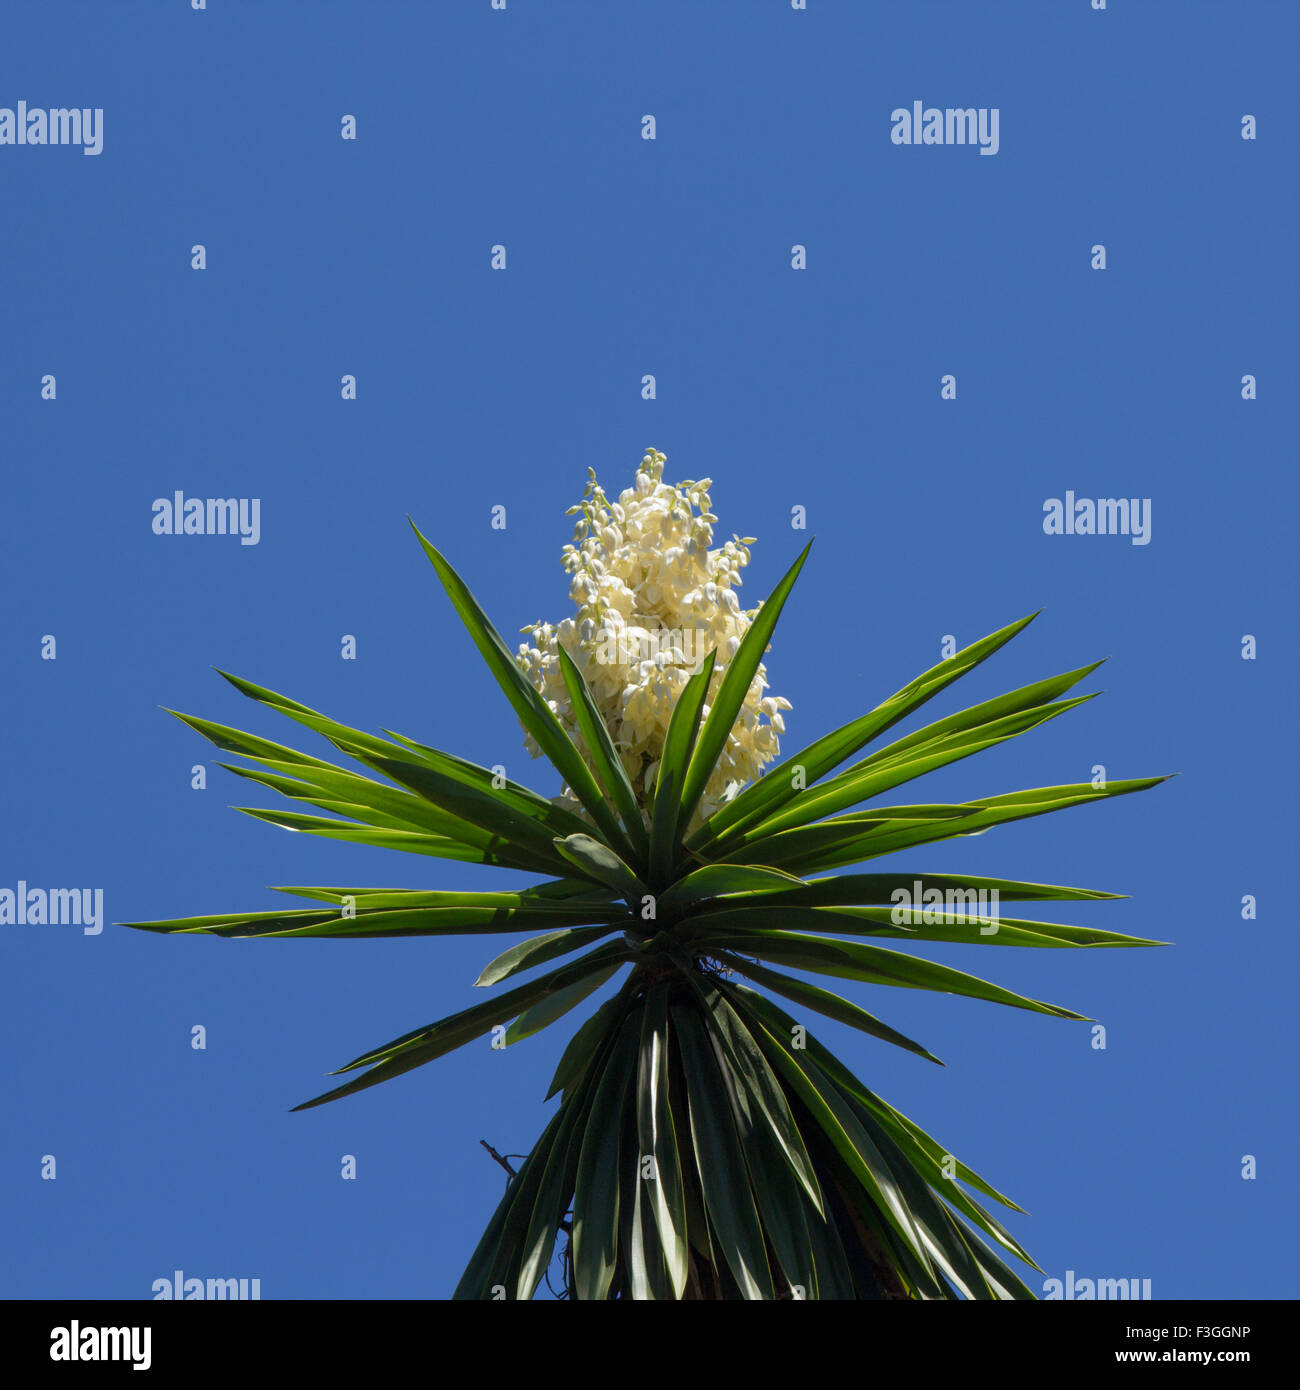 Fioritura di piante di yucca contro il cielo blu sullo sfondo Foto Stock